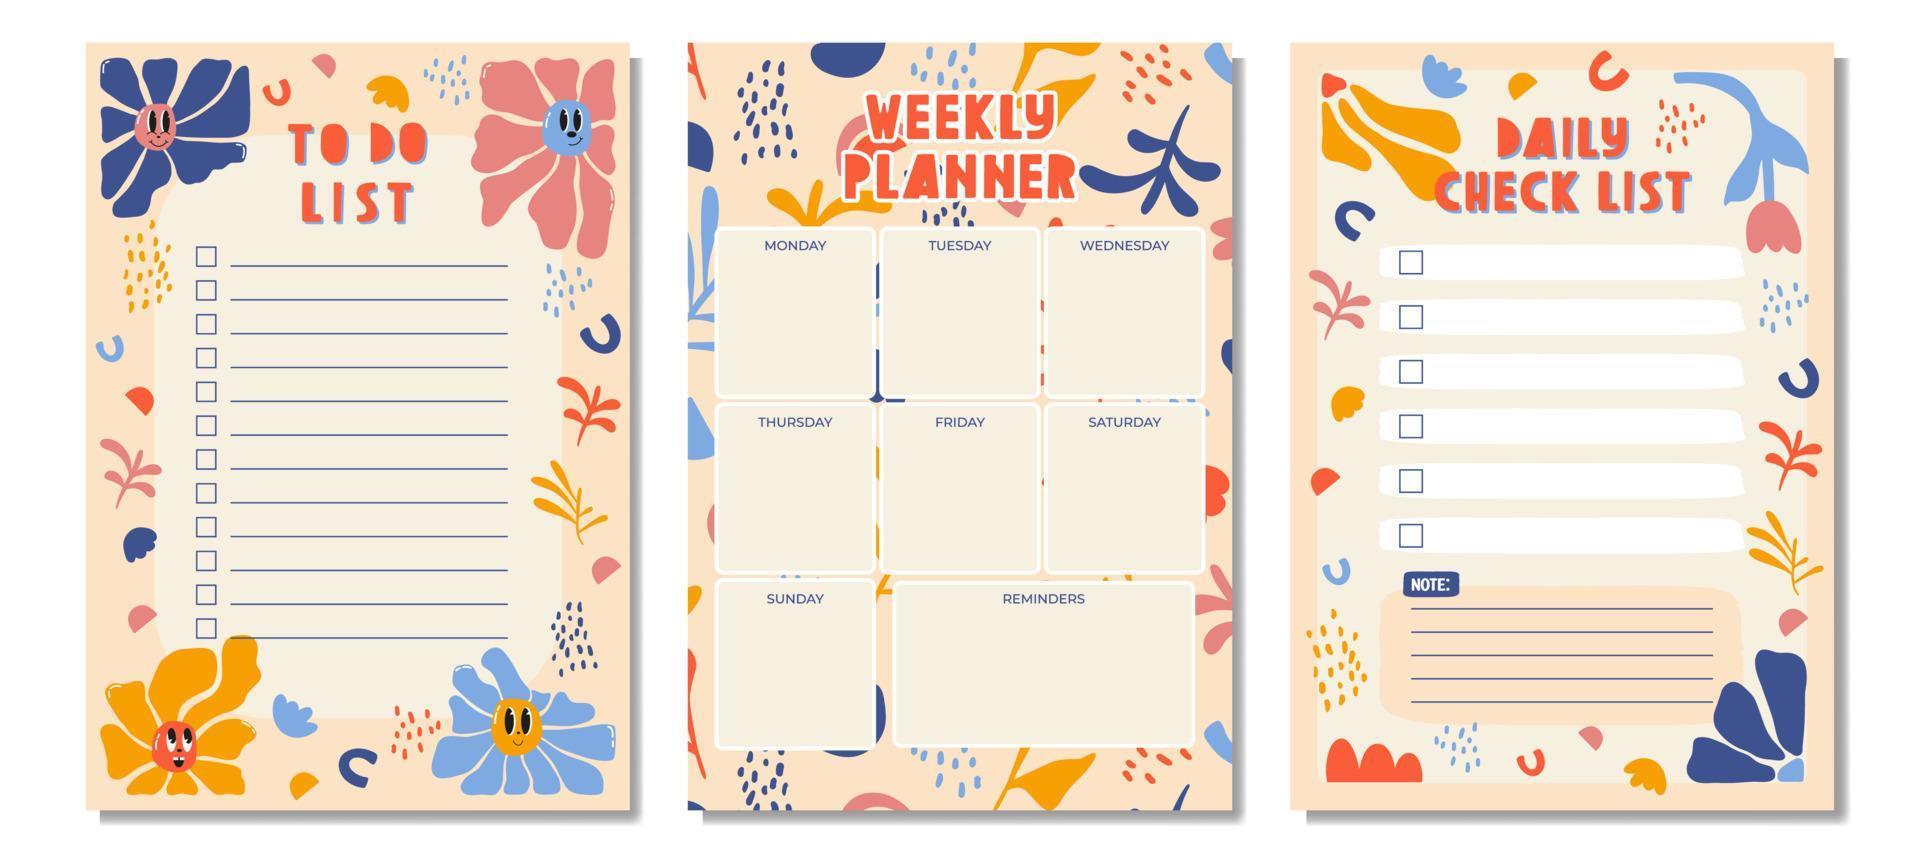 dagelijkse checklistplanner, notitiepapier, weekplanner, takenlijst versierd met schattige cartoonkrabbelbloemen en botanische illustraties. schoolplanner en organisator. platte vector